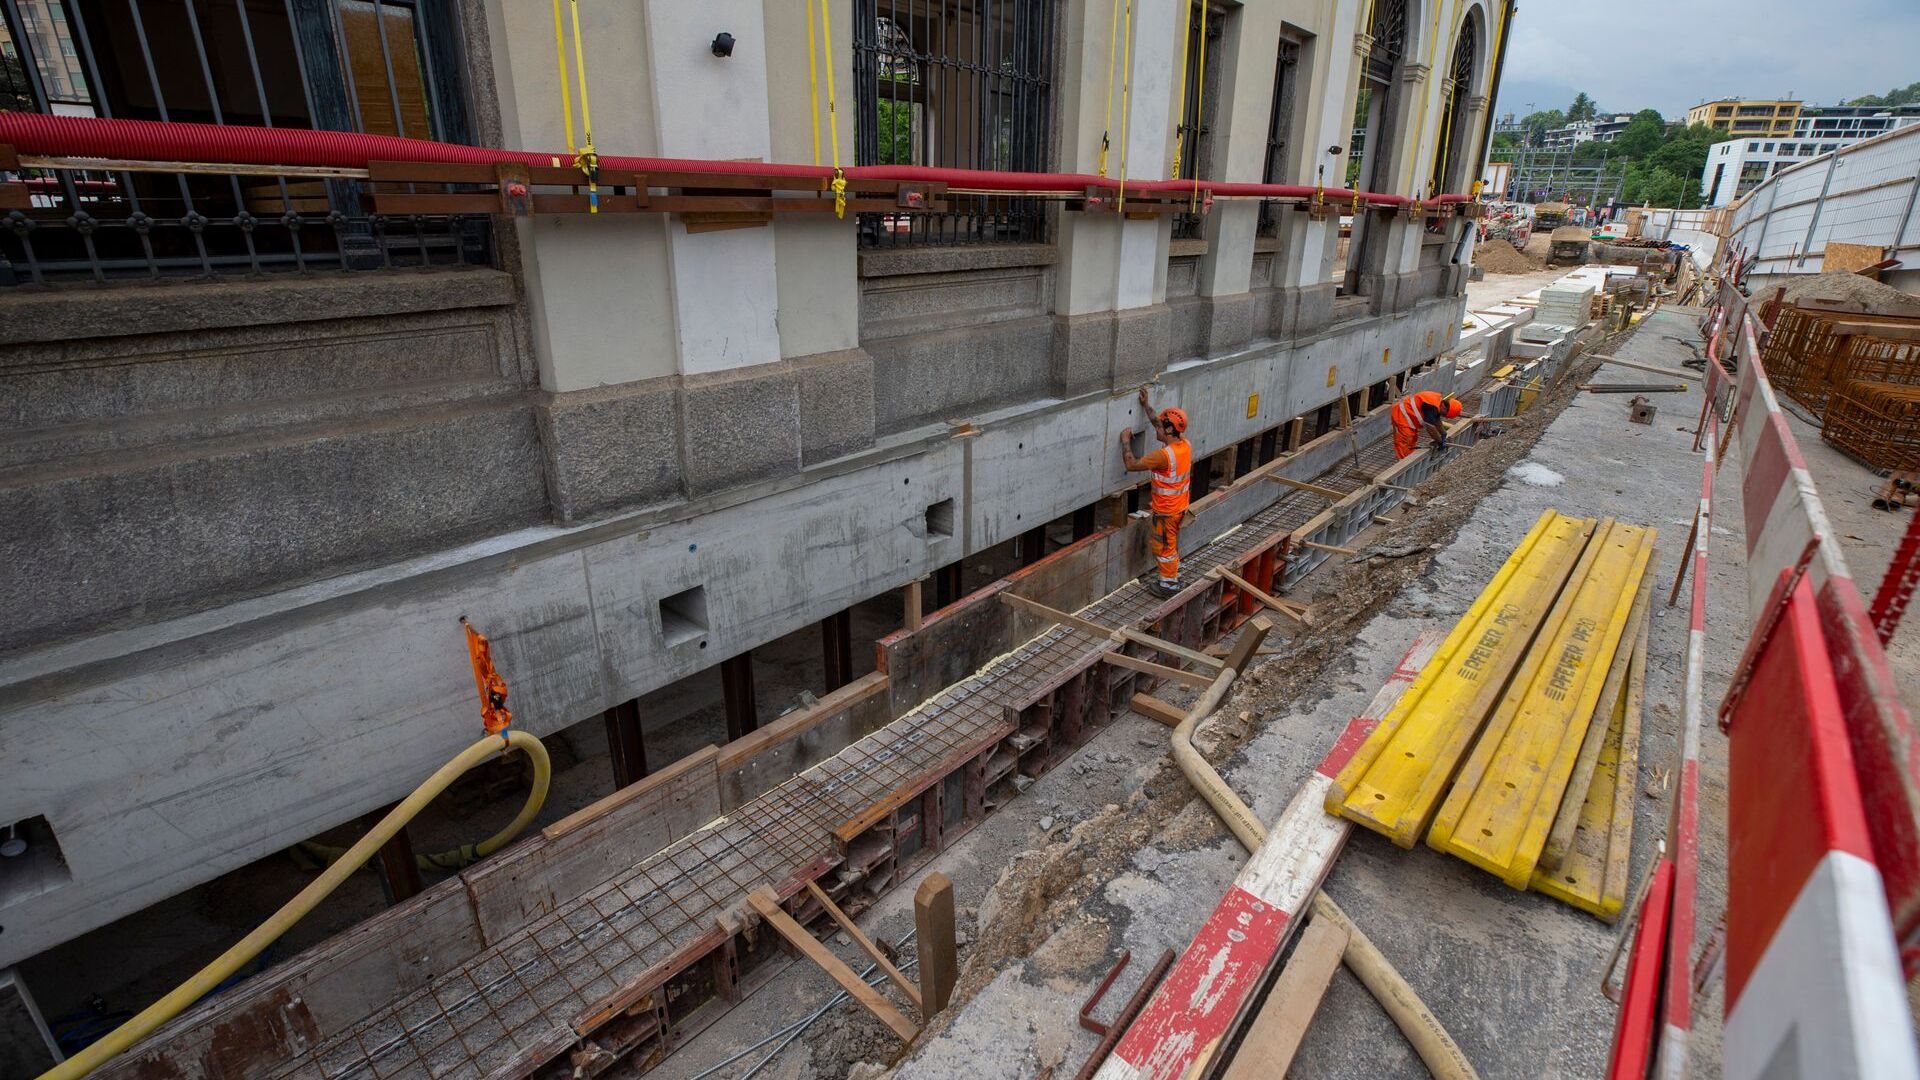 Ang construction site ng bagong Lugano-Besso underpass at ang relokasyon ng tinatawag na "service building" ng SBB CFF FFS station